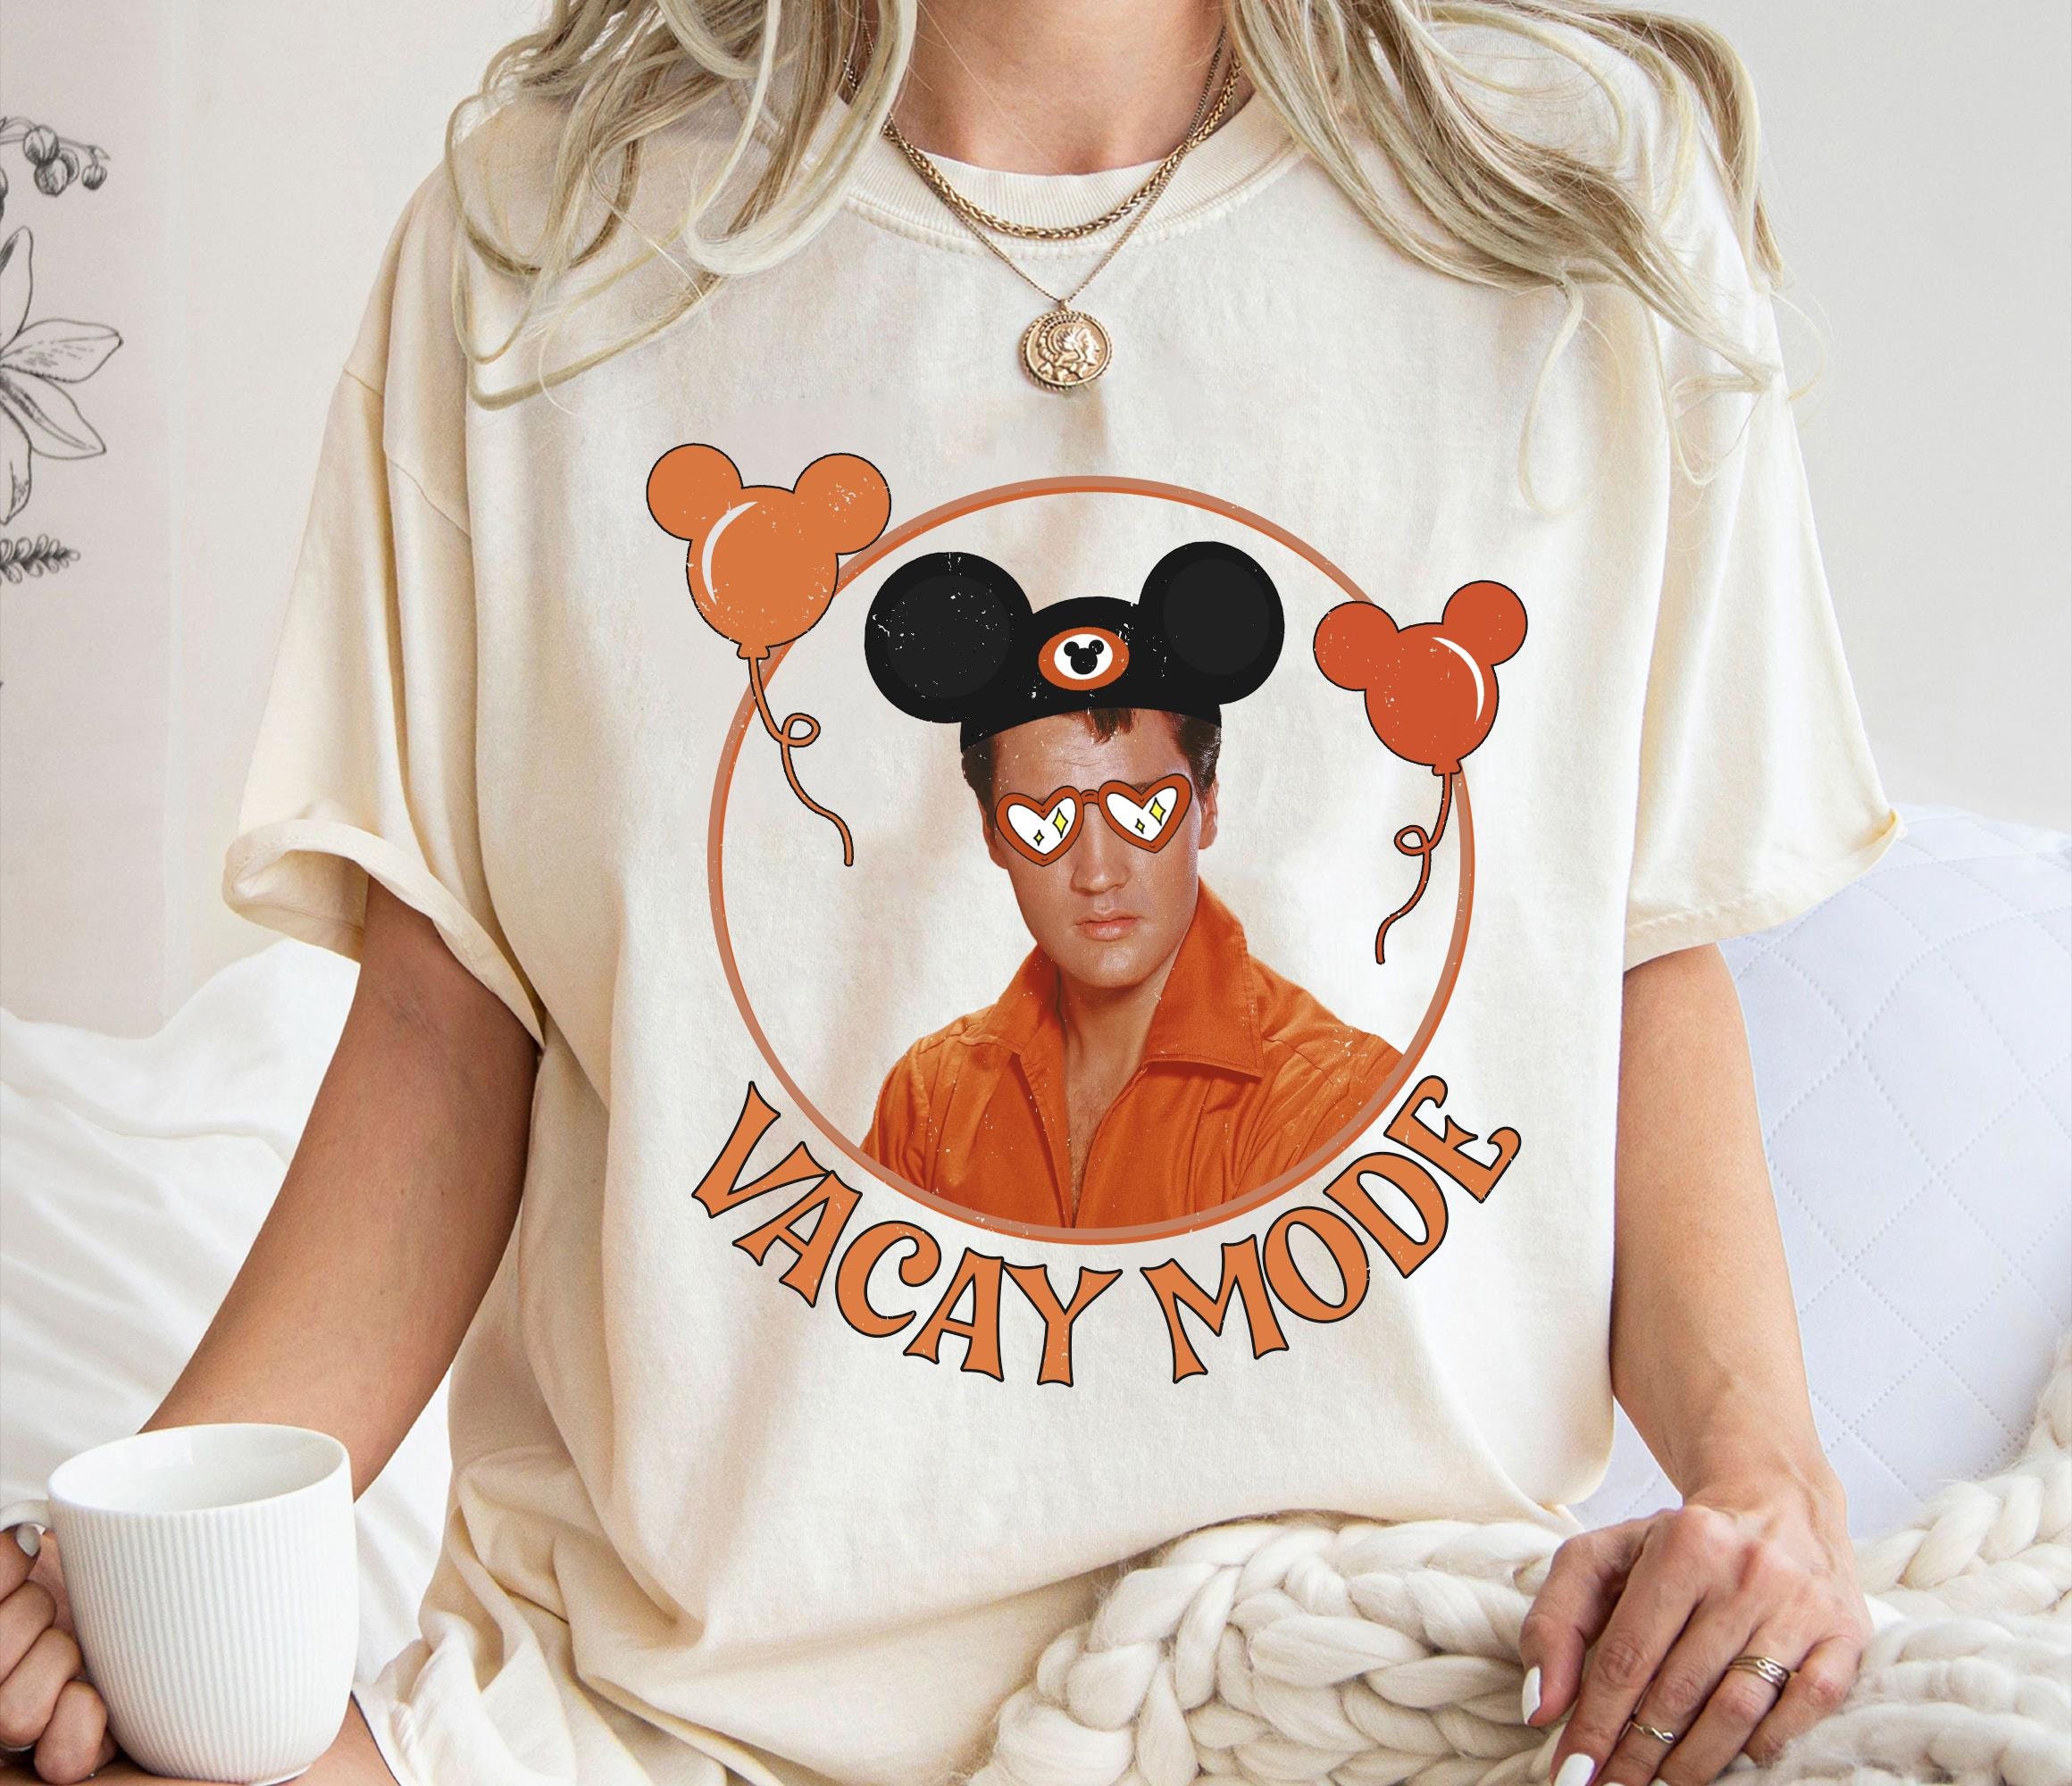 Retro Elvis Presley With Mickey Balloon Shirt, Vacay Mode T-Shirt